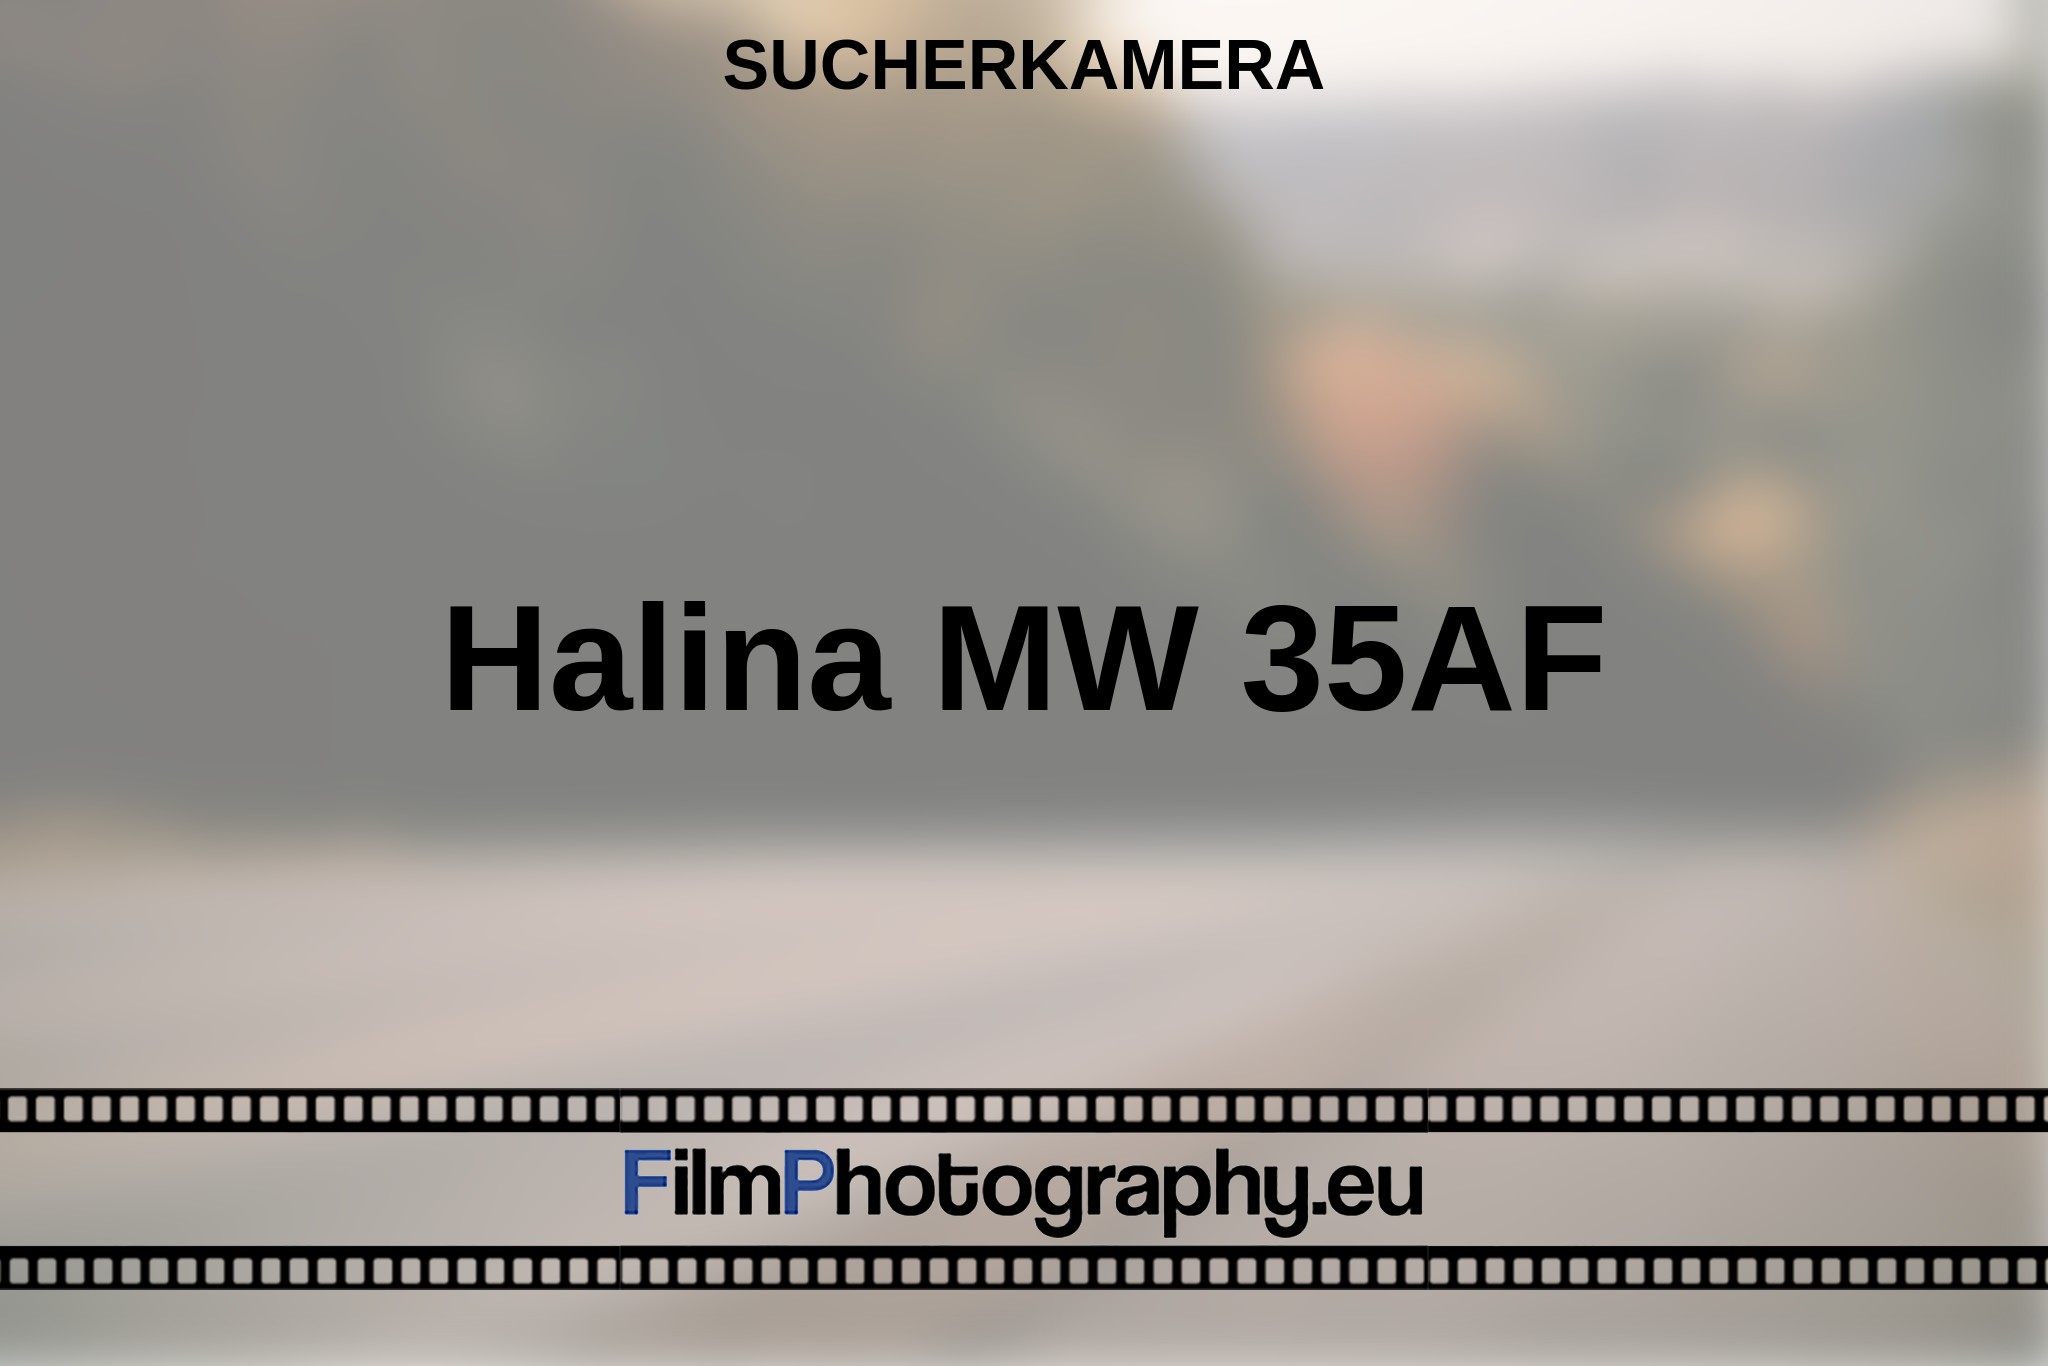 halina-mw-35af-sucherkamera-bnv.jpg